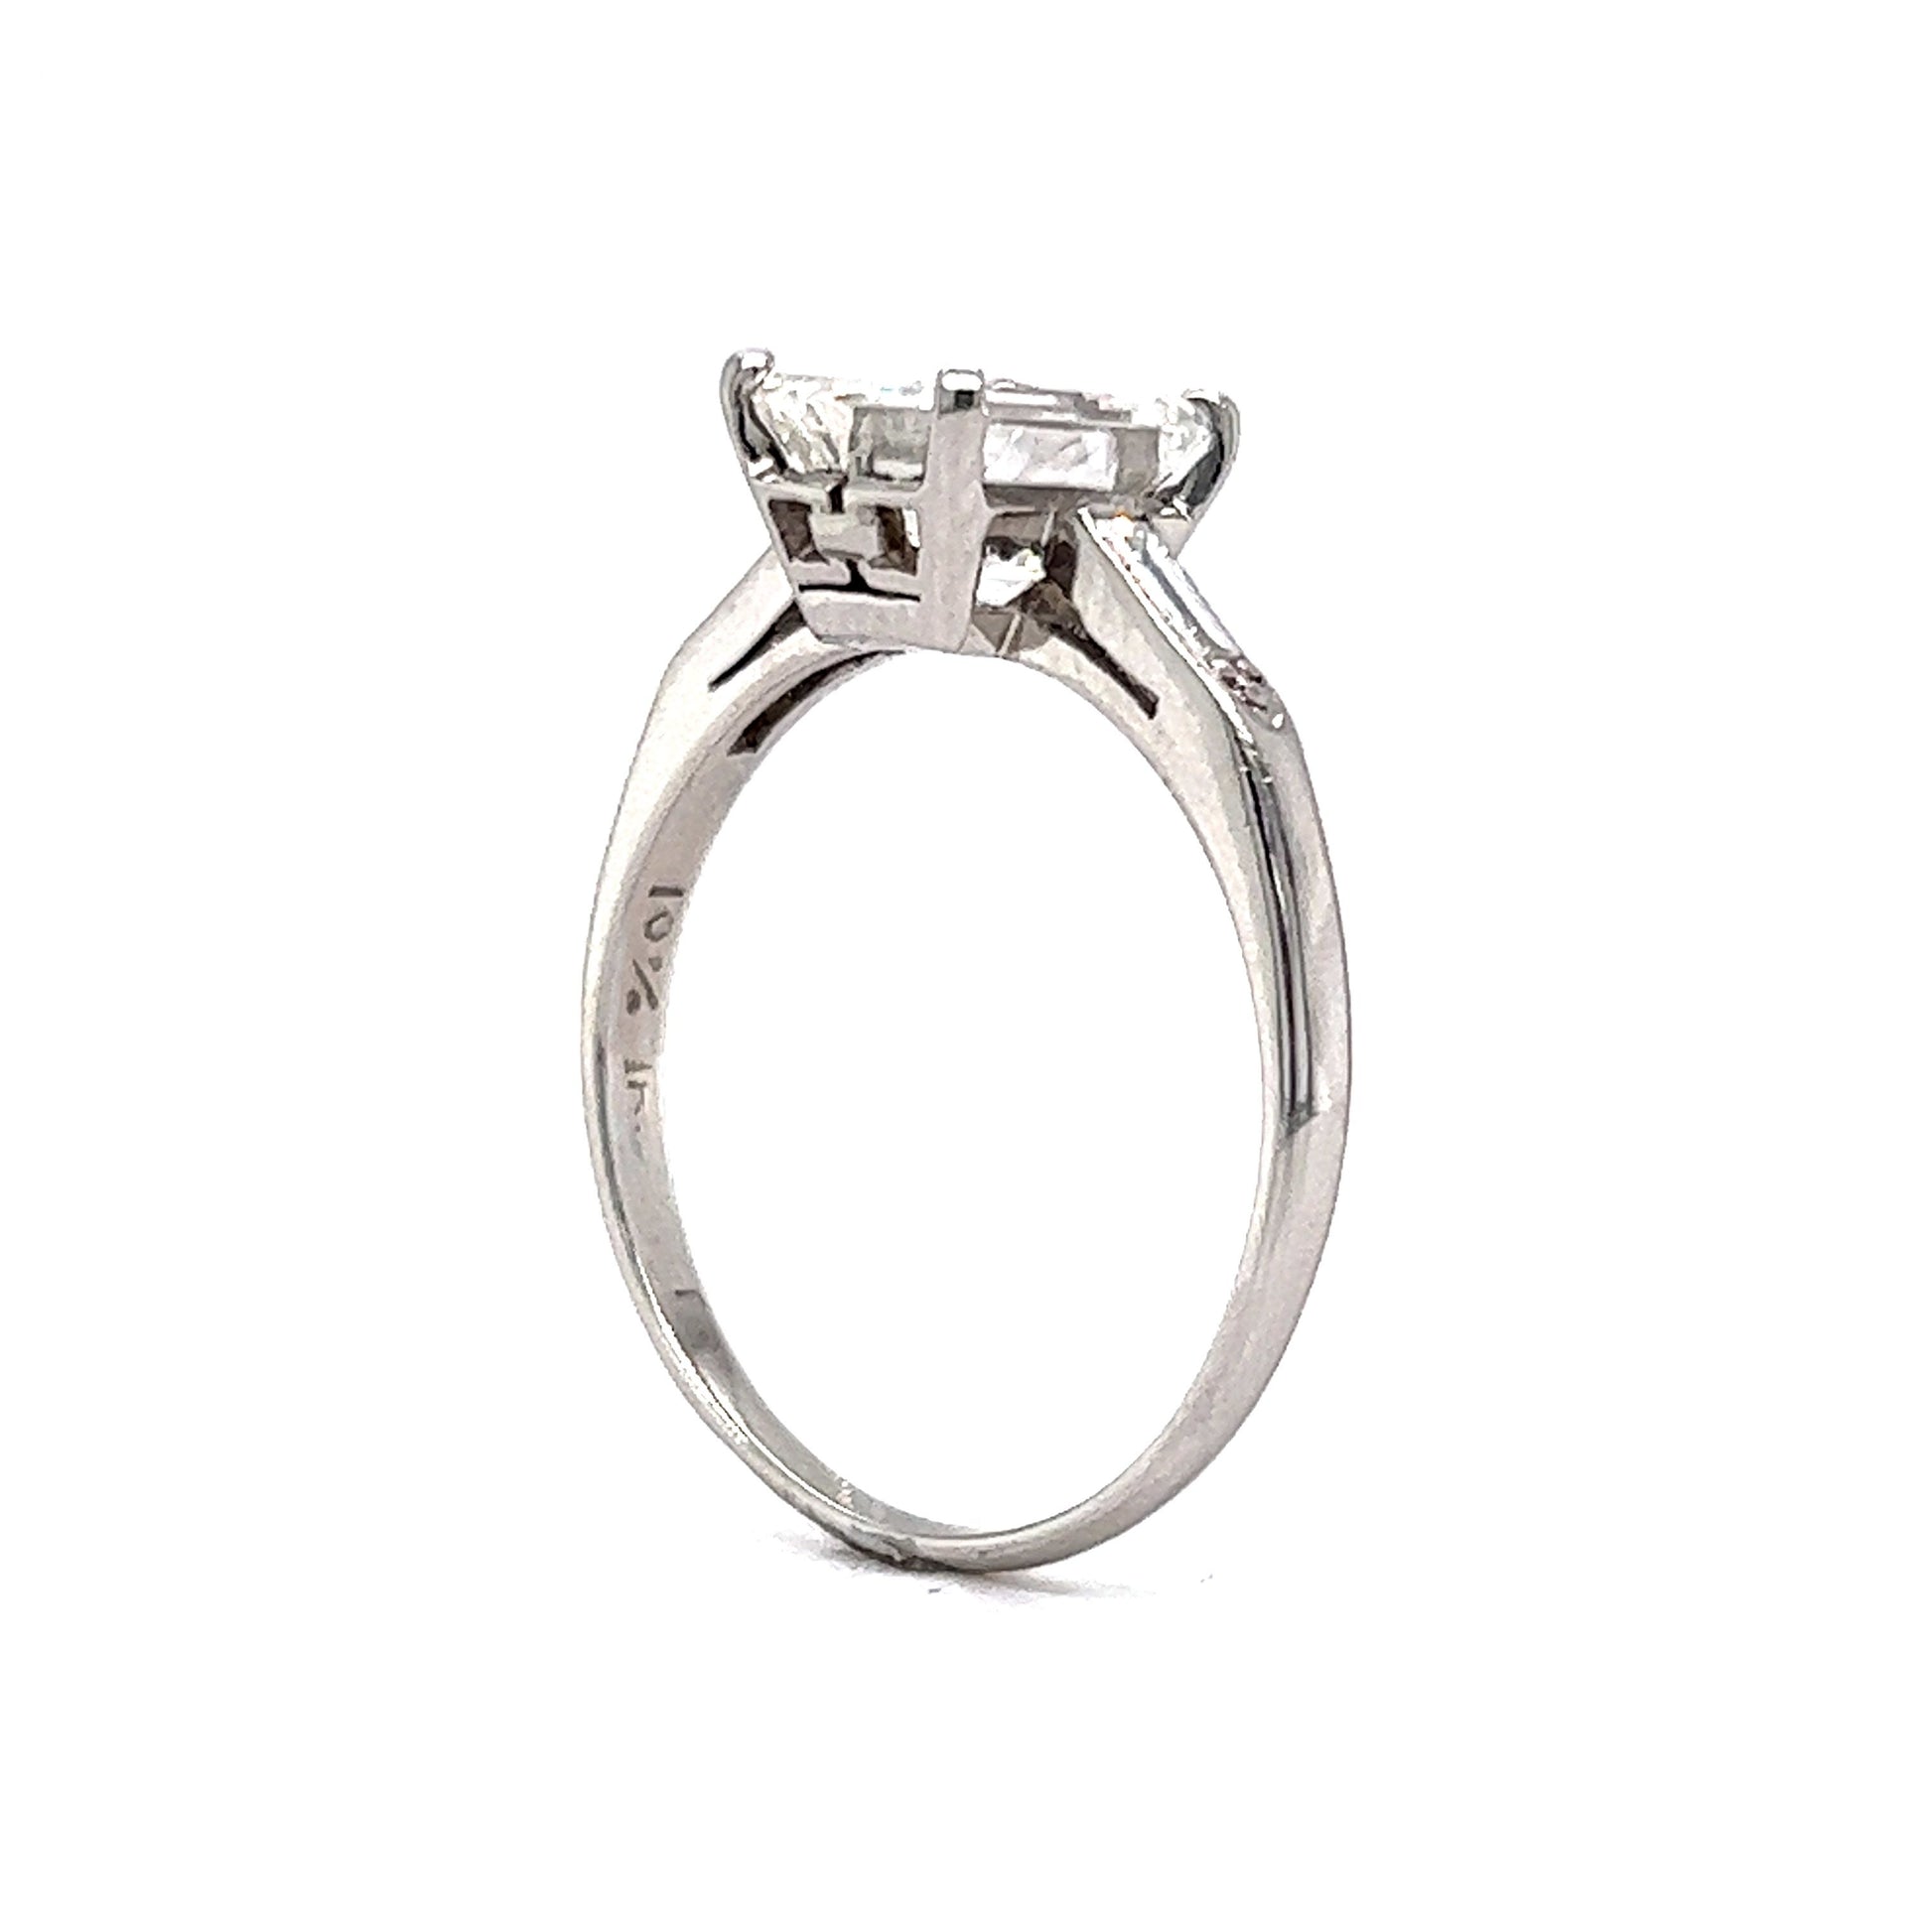 1.82 Emerald Cut Diamond Engagement Ring in Platinum